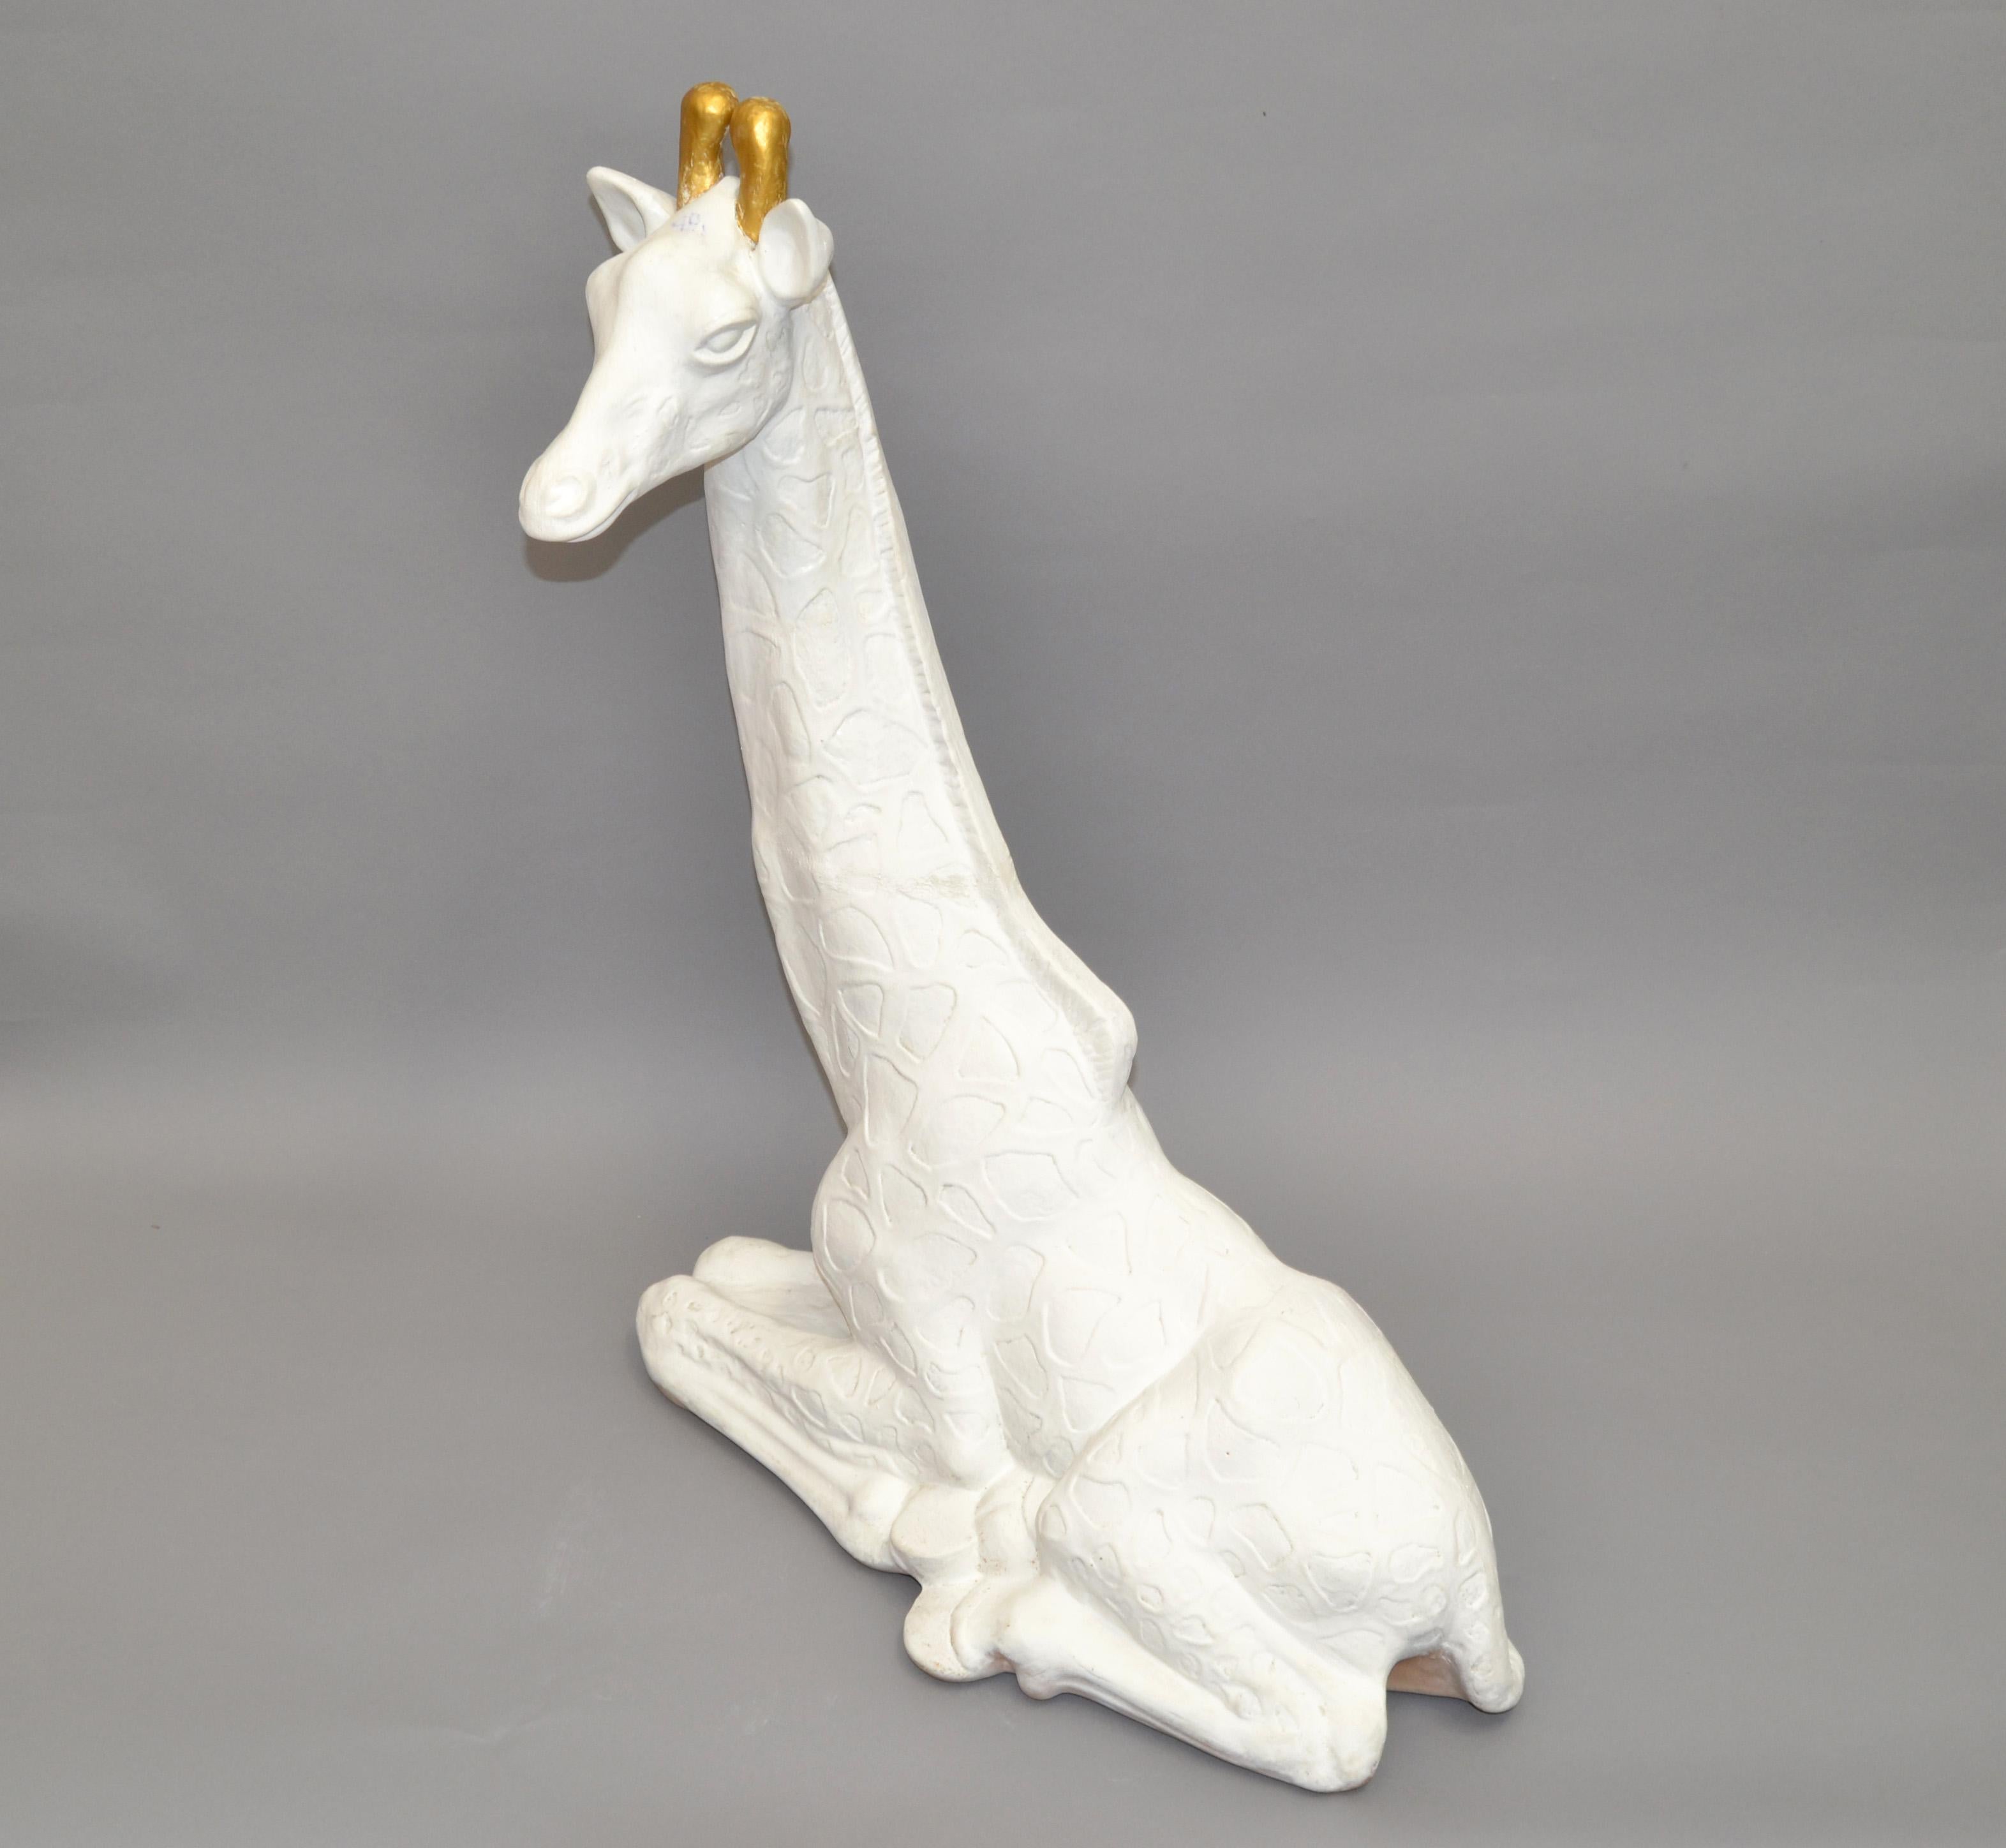 American Mid-Century Modern Handmade White & Gold Finish Plaster Giraffe Animal Sculpture For Sale